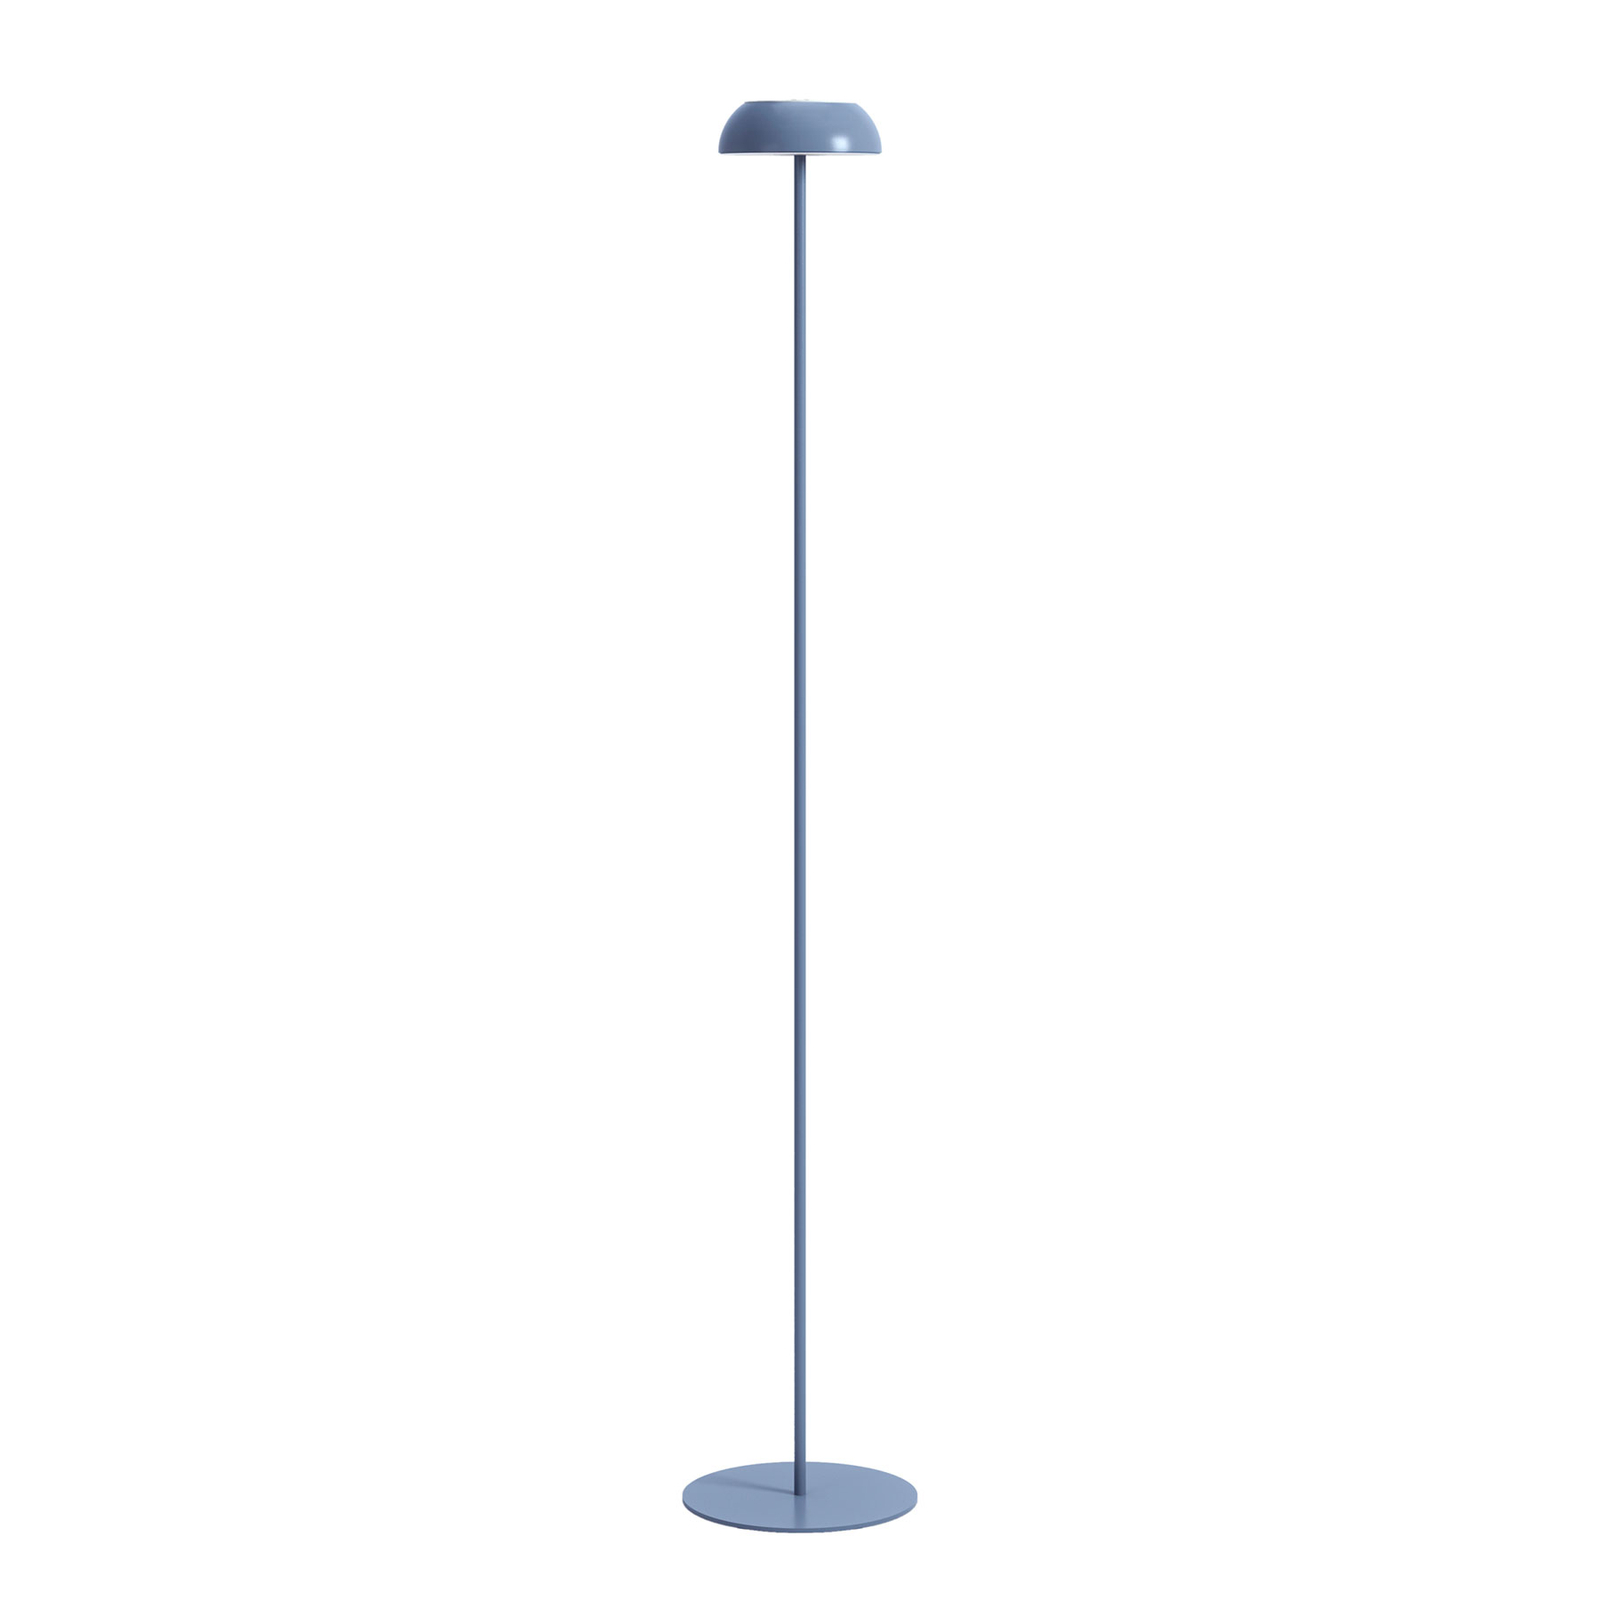 Axolight Float piantana LED di design, blu